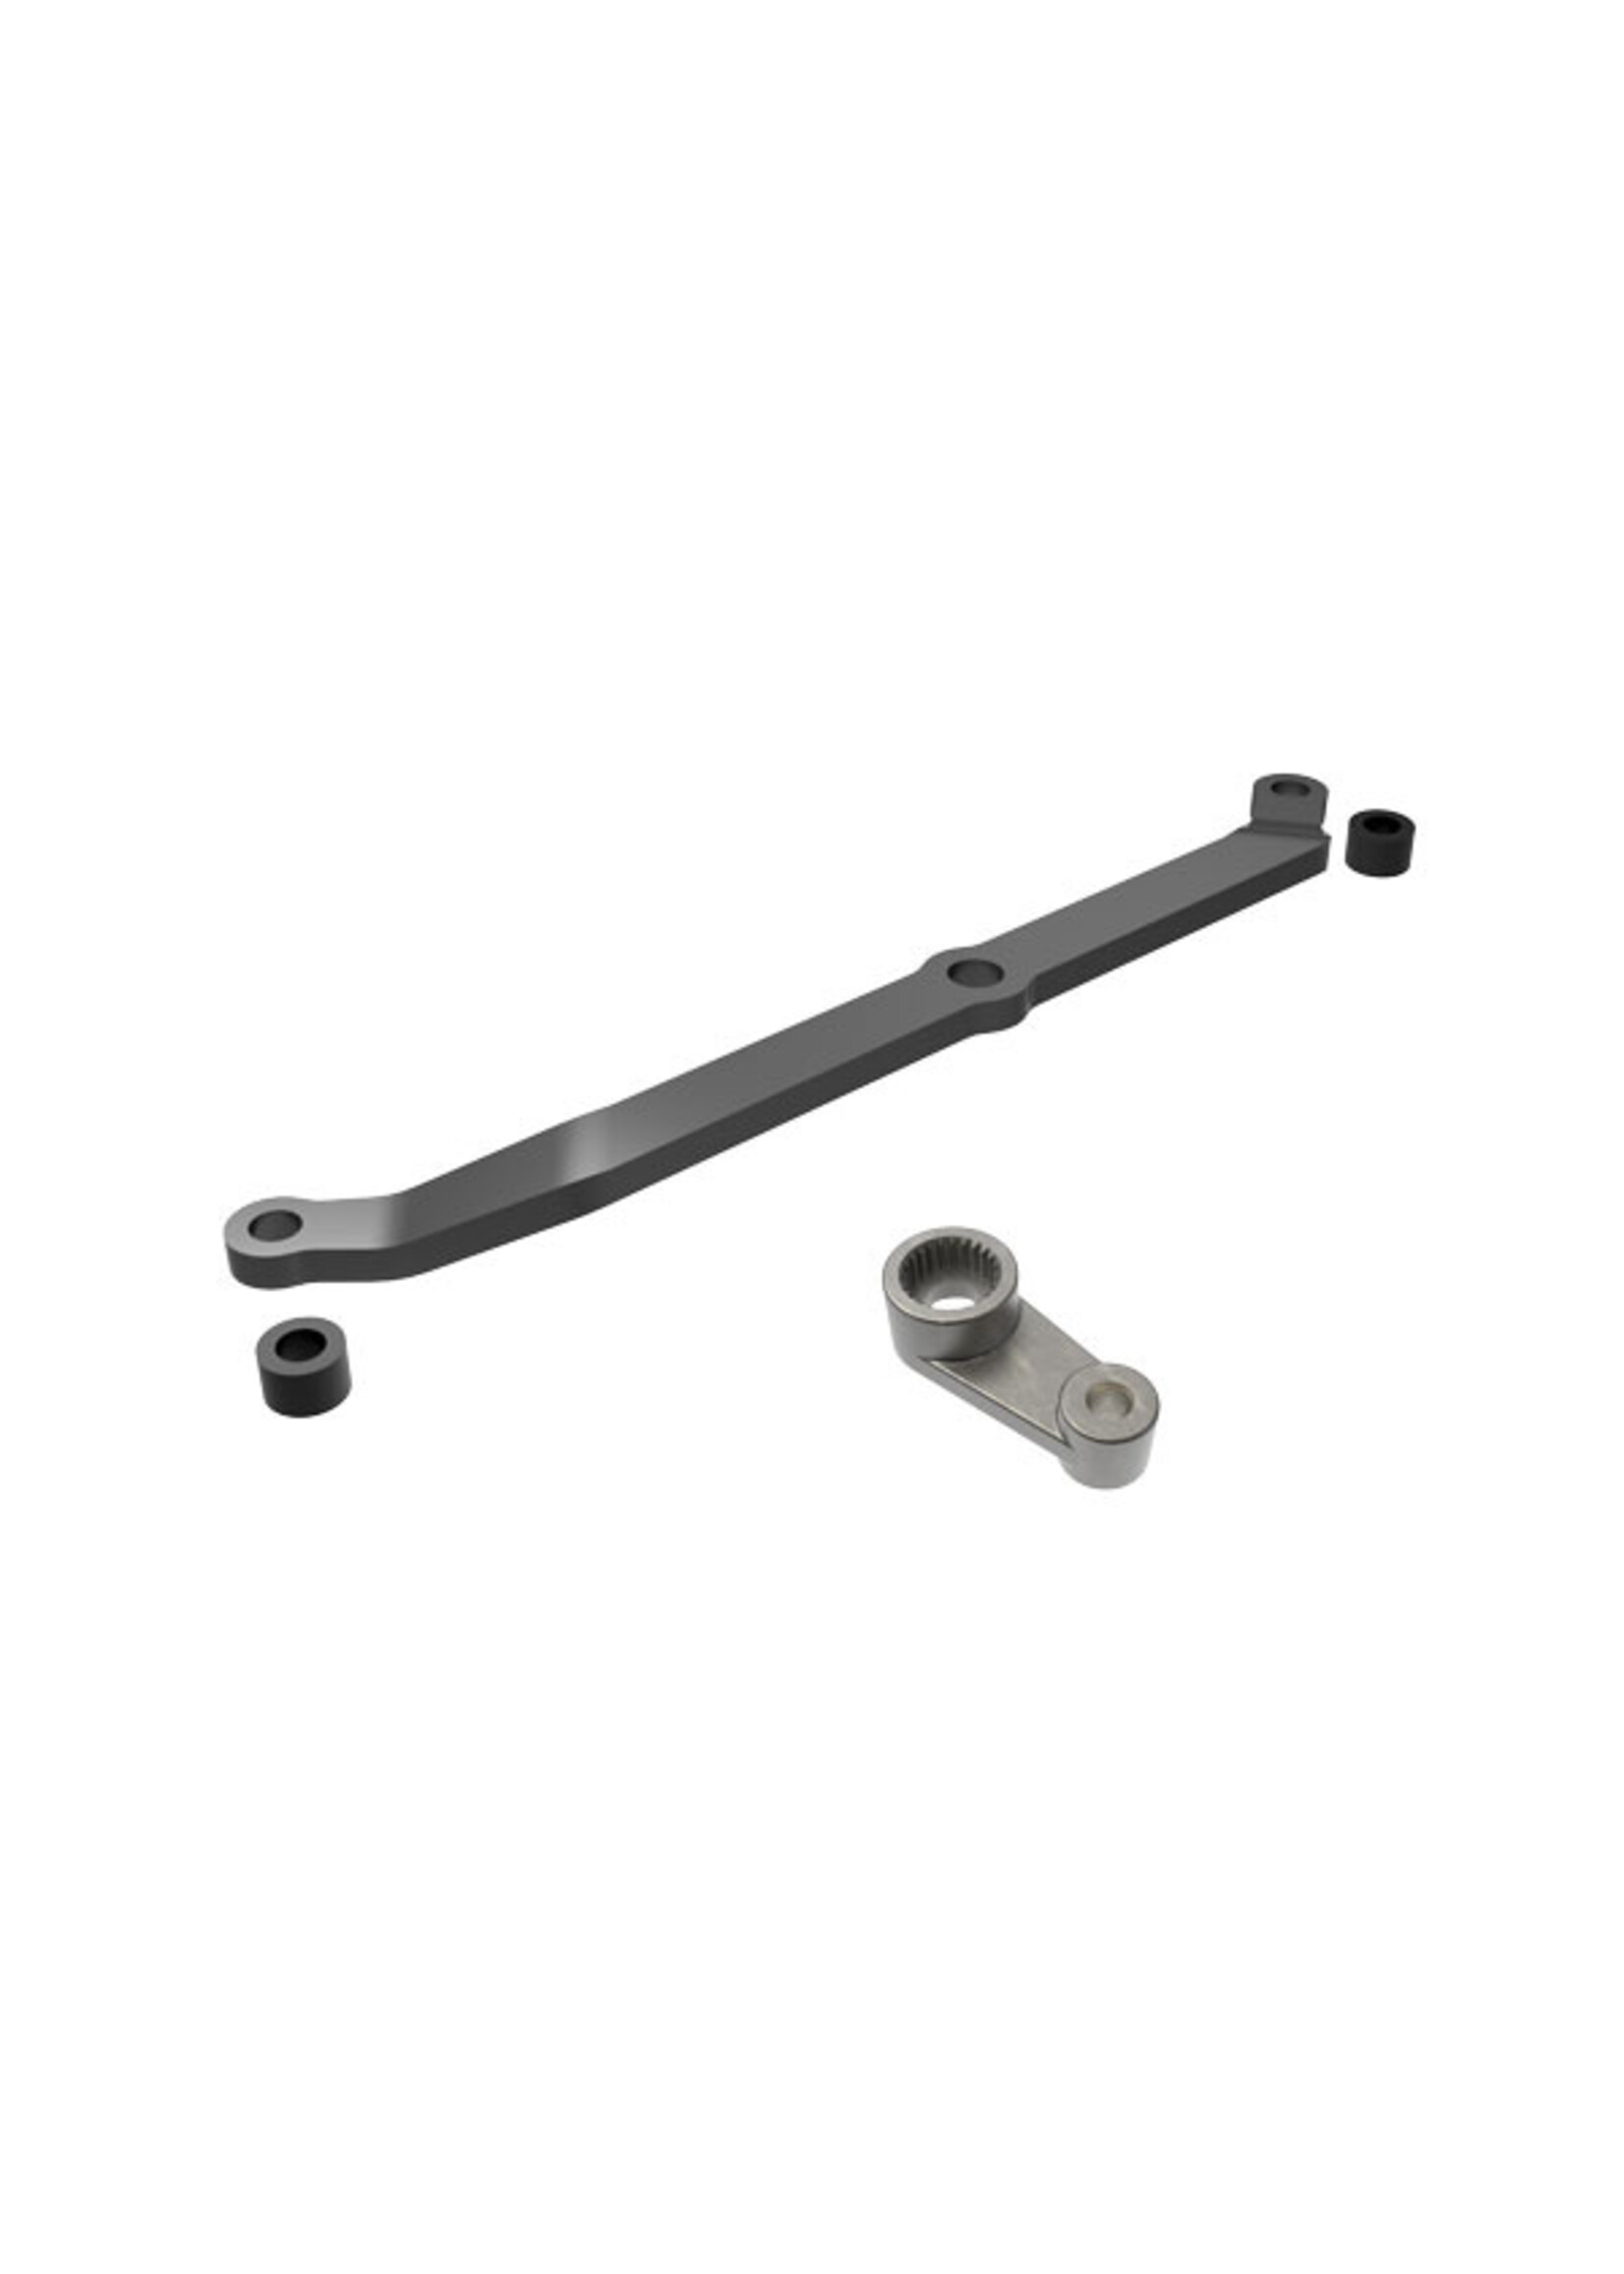 Traxxas 9748-GRAY - Aluminum Steering Link & Servo Horn - Gray